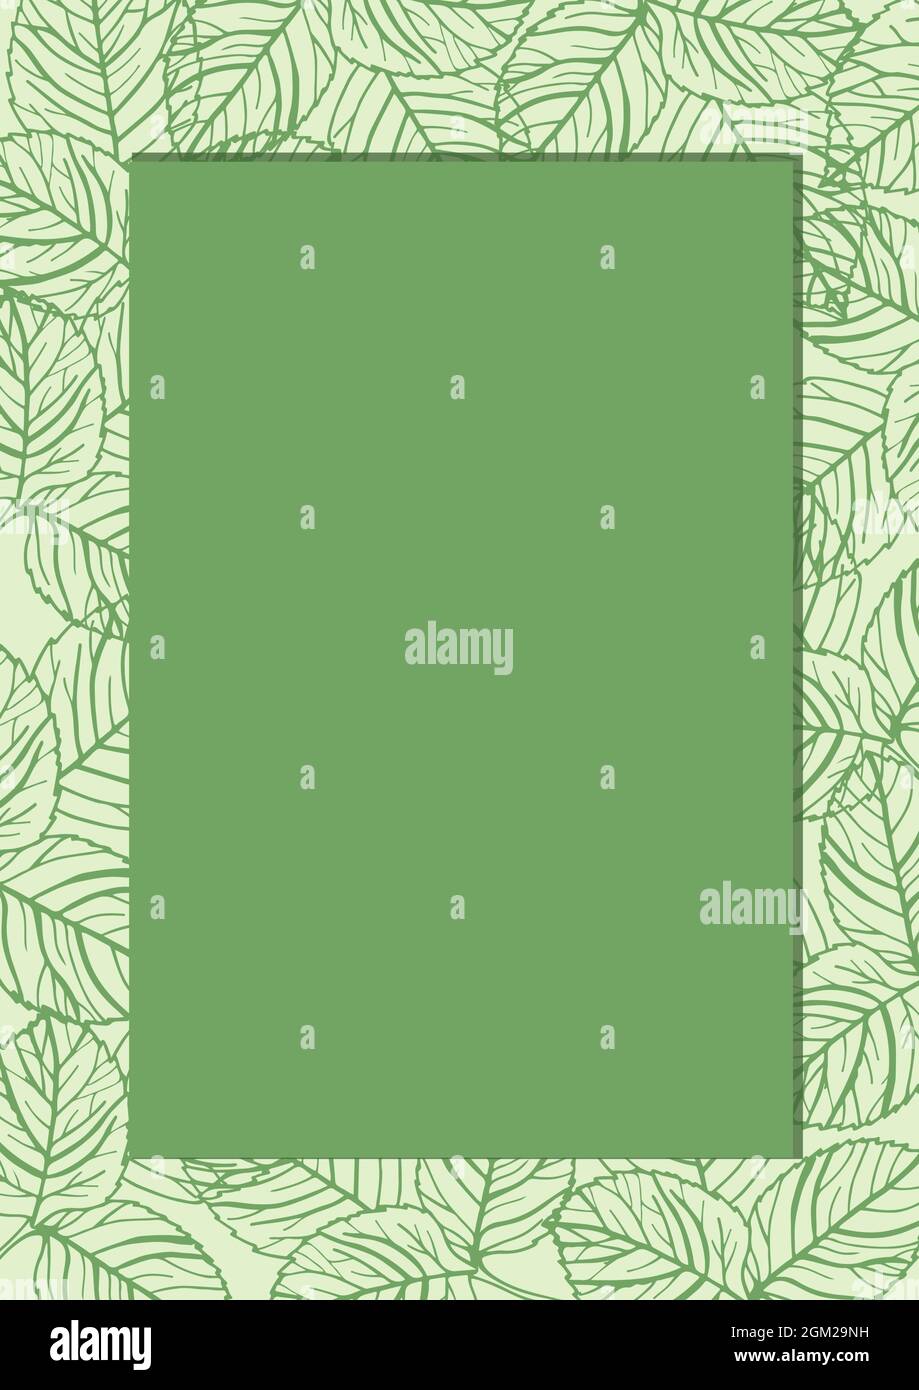 Image générée numériquement de bannière verte avec espace de copie contre motif de conception de feuilles Banque D'Images